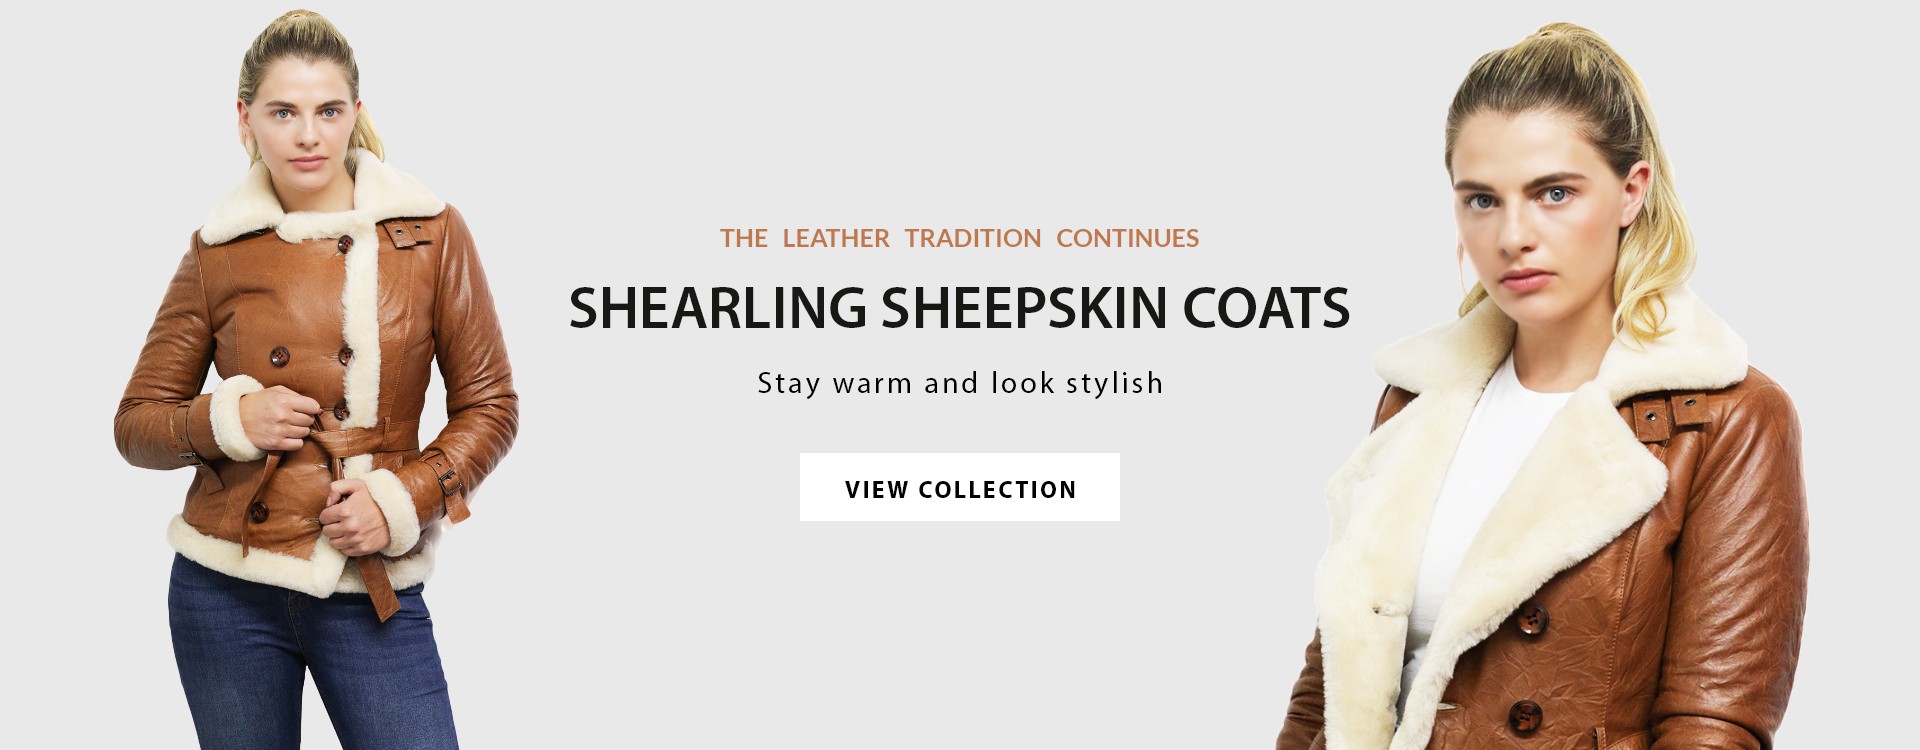 Womens shearling sheepskin leather duffle coat